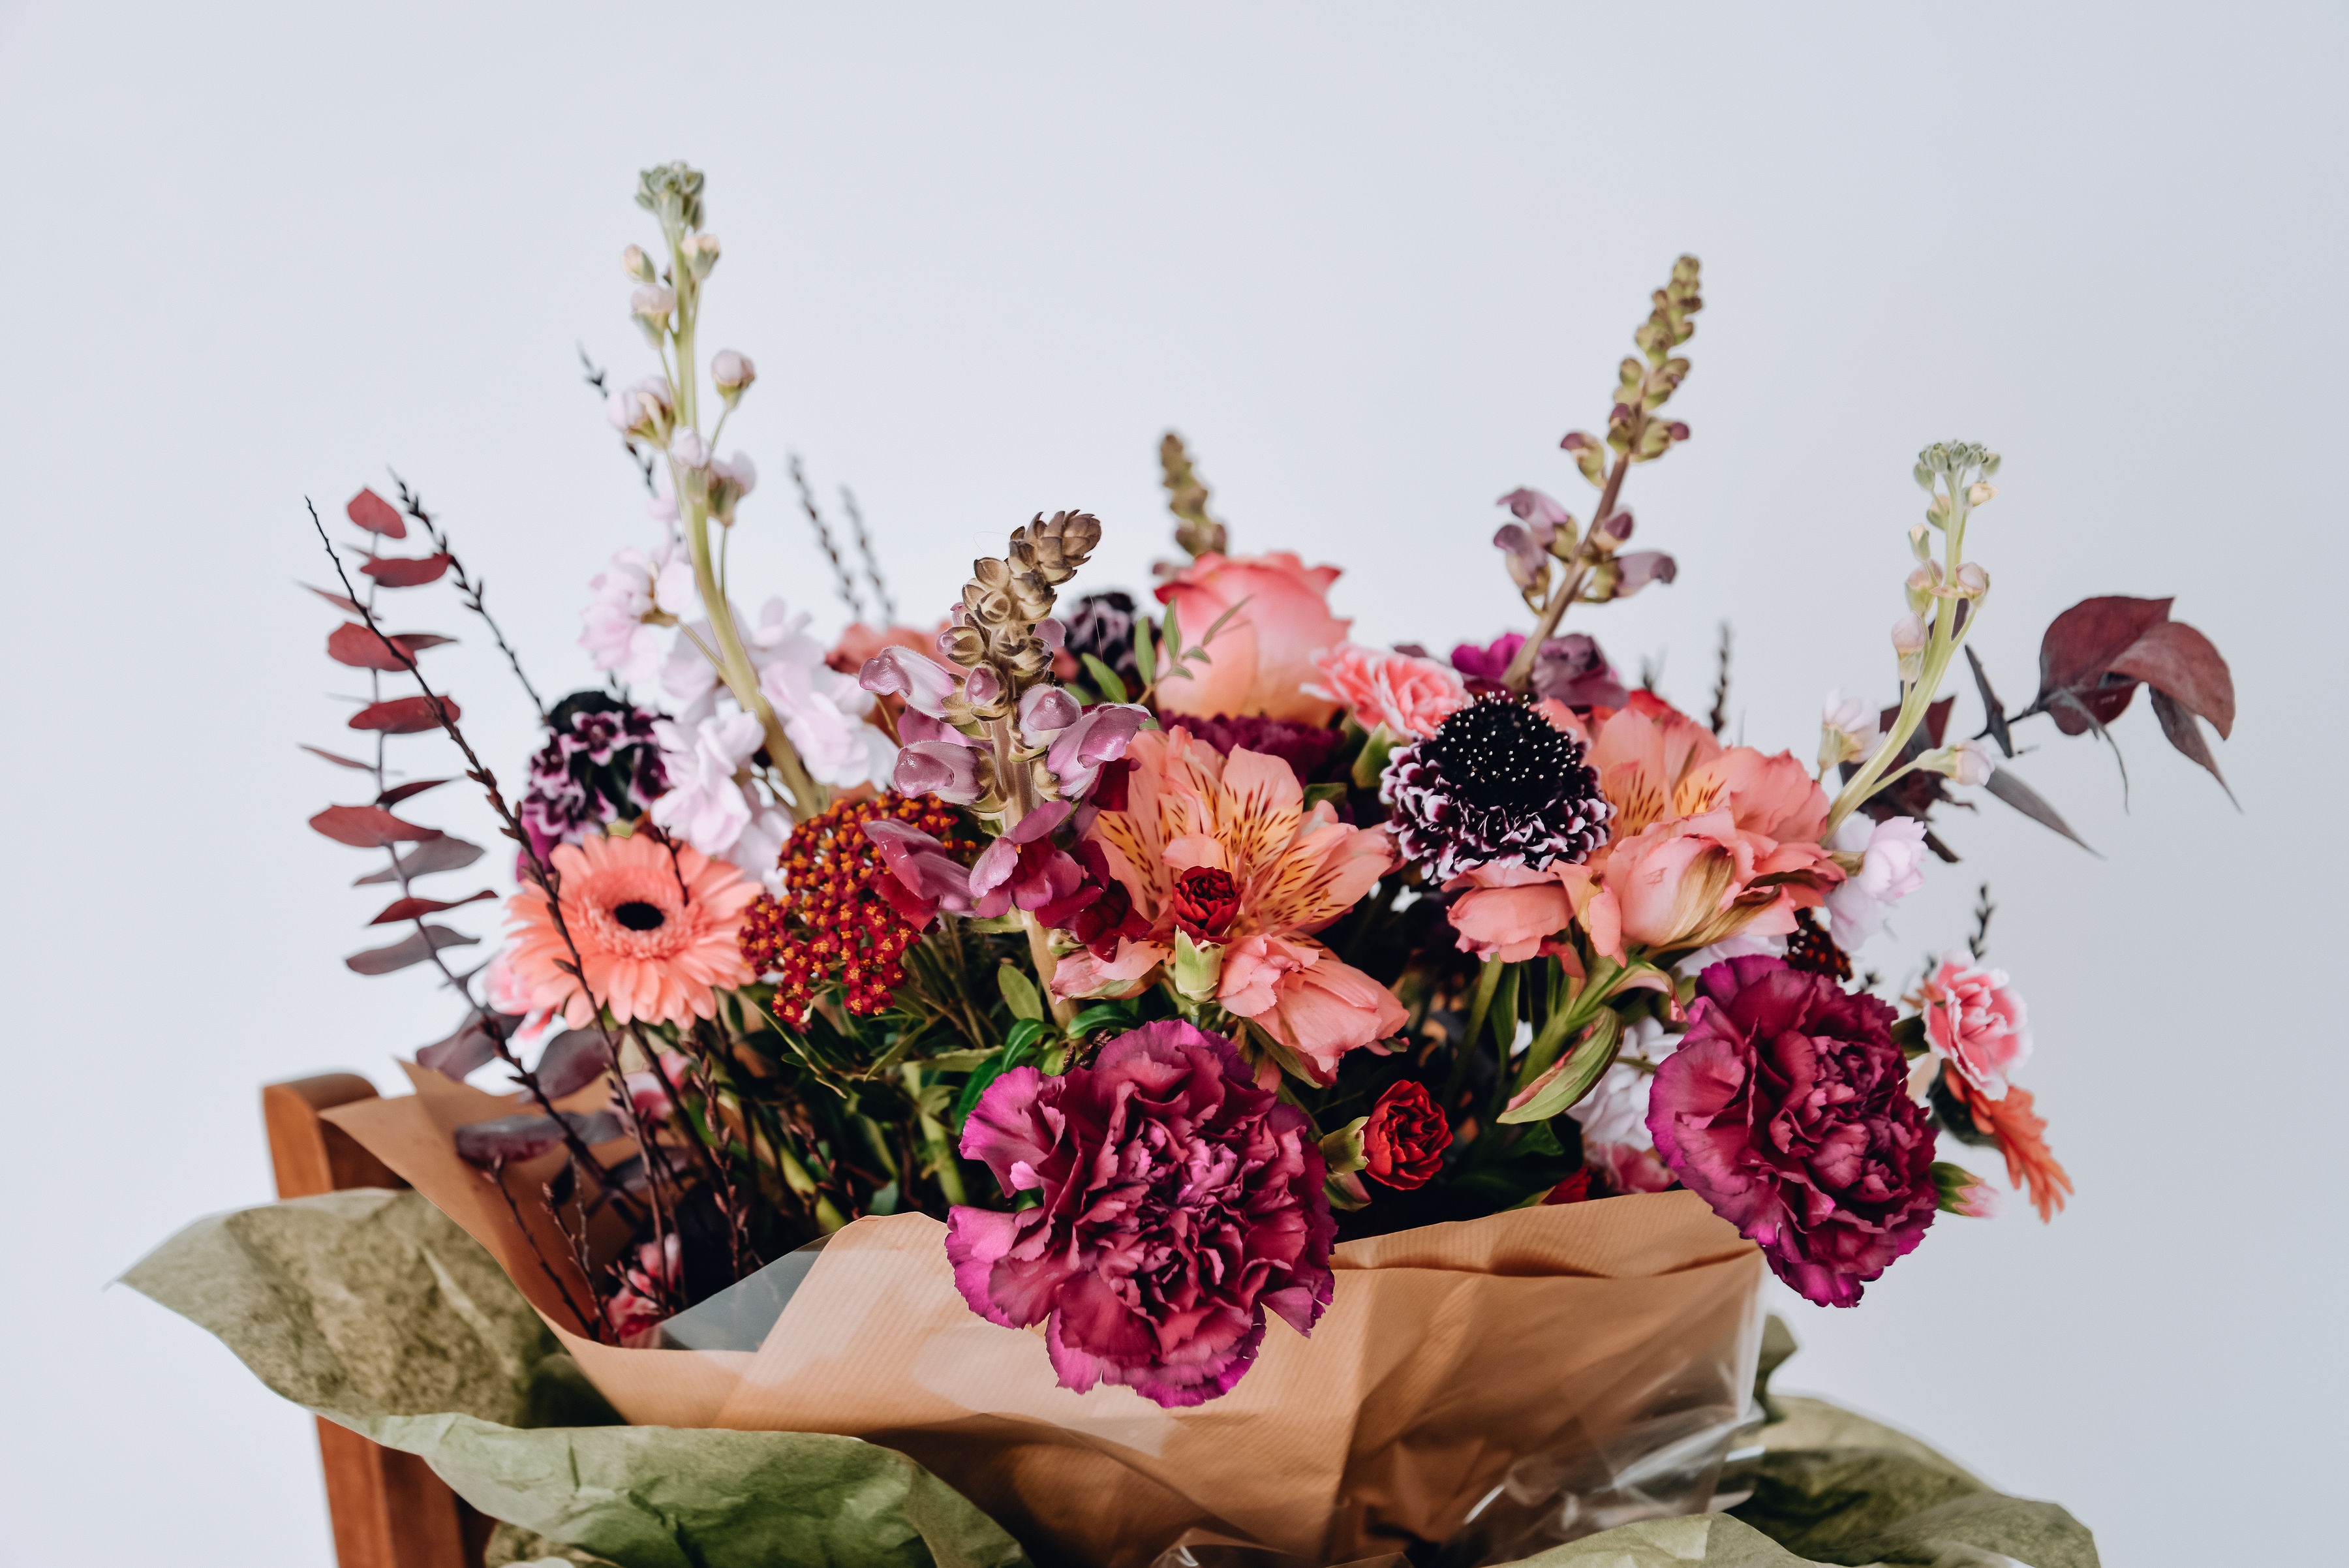 Luxury Romantic Handtied Bouquet Flower Arrangement